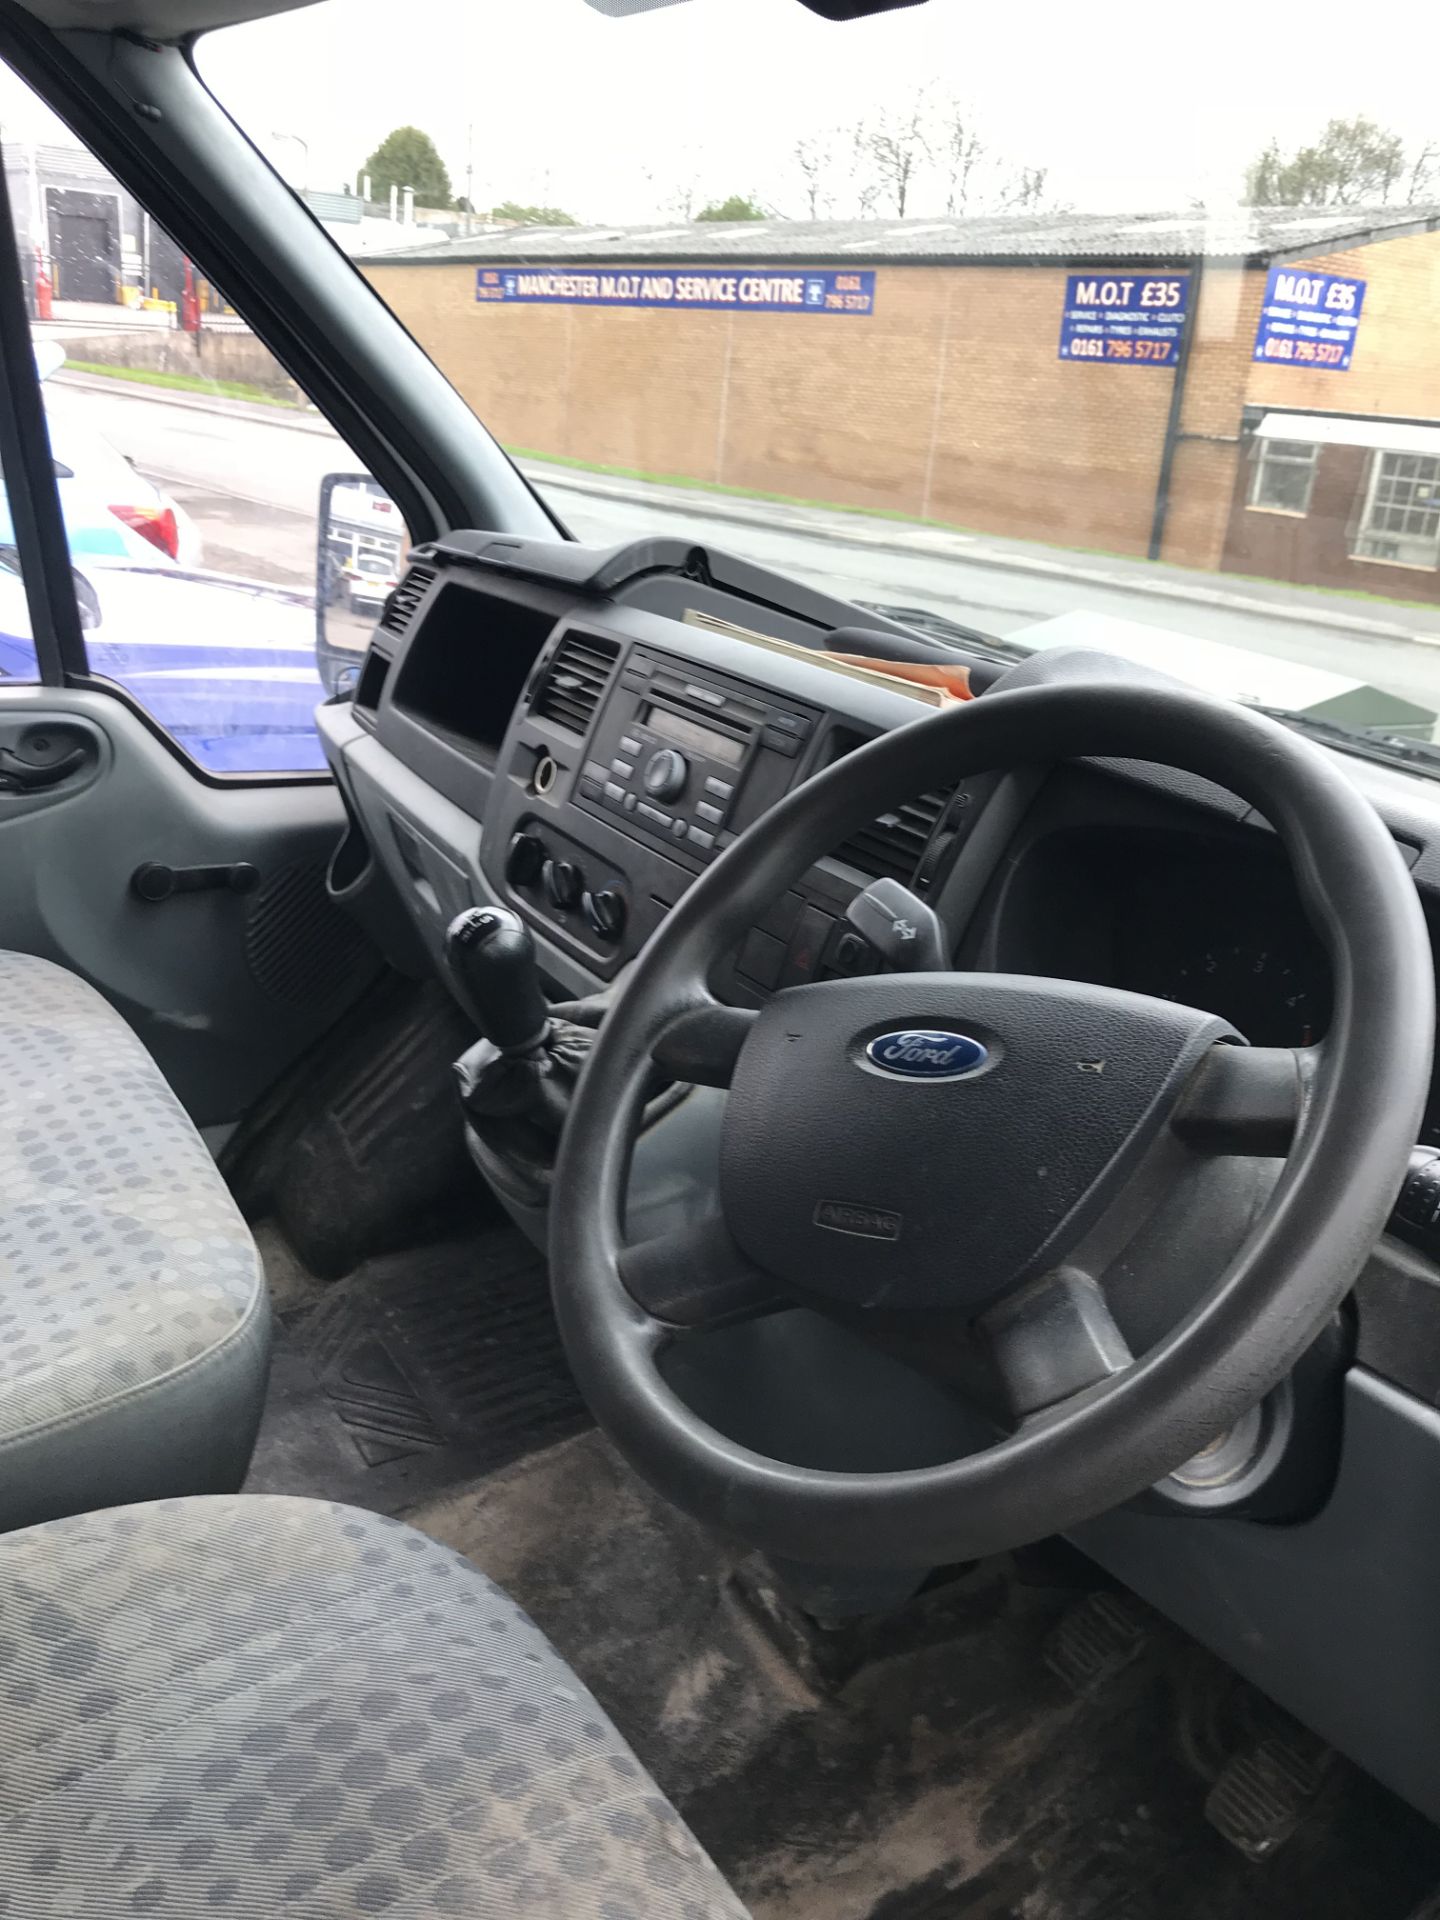 Ford Transit 85 T280 FWD Panel Van | Diesel | MV58 LWM | 144,066 Miles - Image 7 of 8